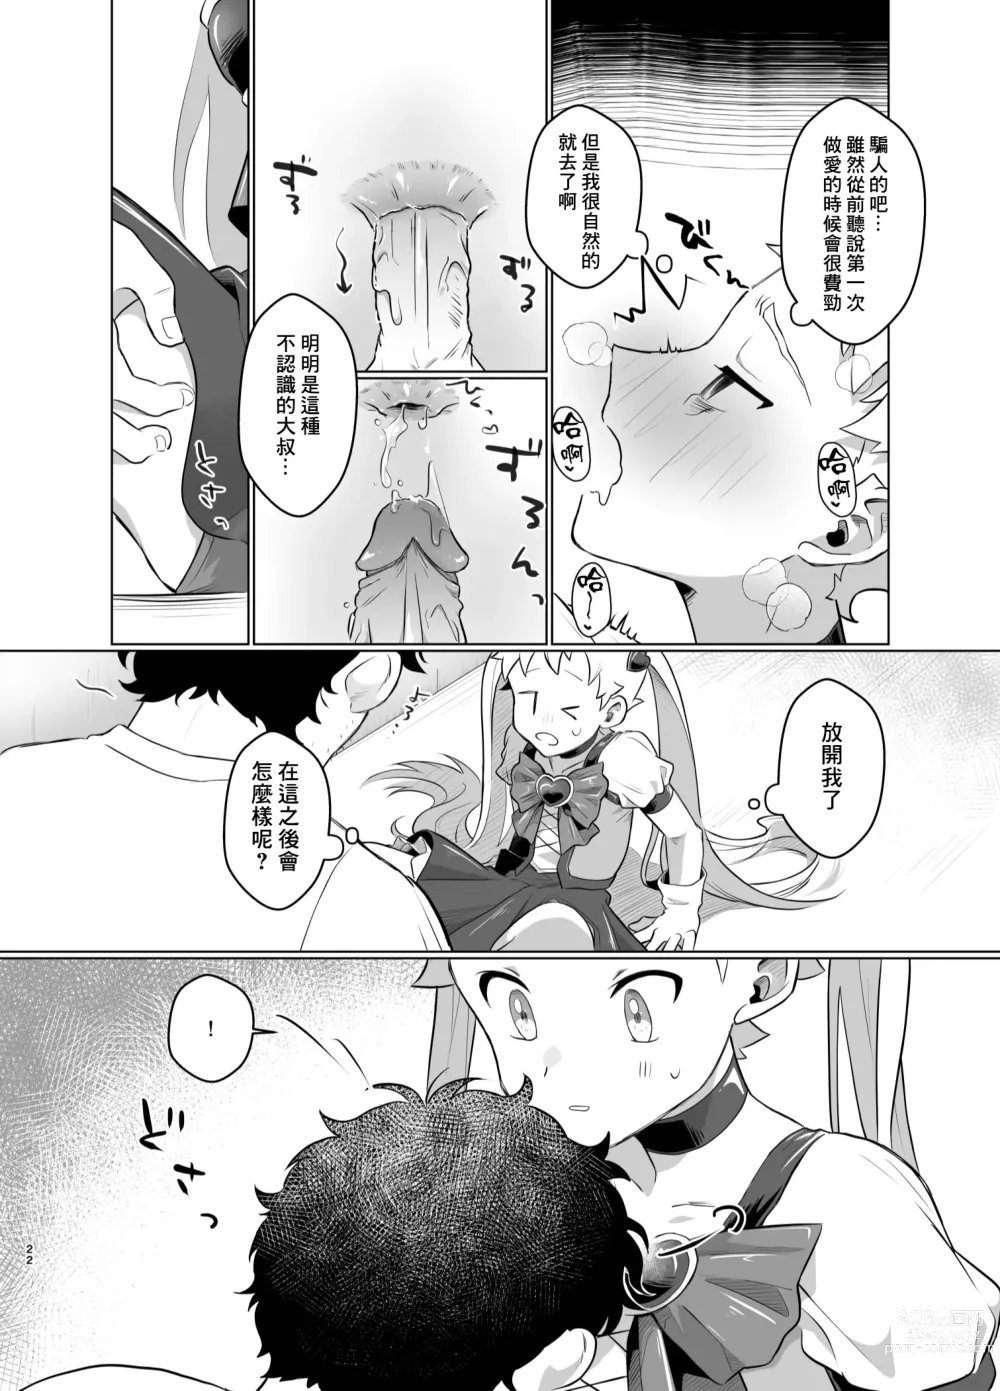 Page 21 of doujinshi Mahou Shoujo Mirakuru Mirachan丨魔法少女奇蹟米拉醬 (decensored)